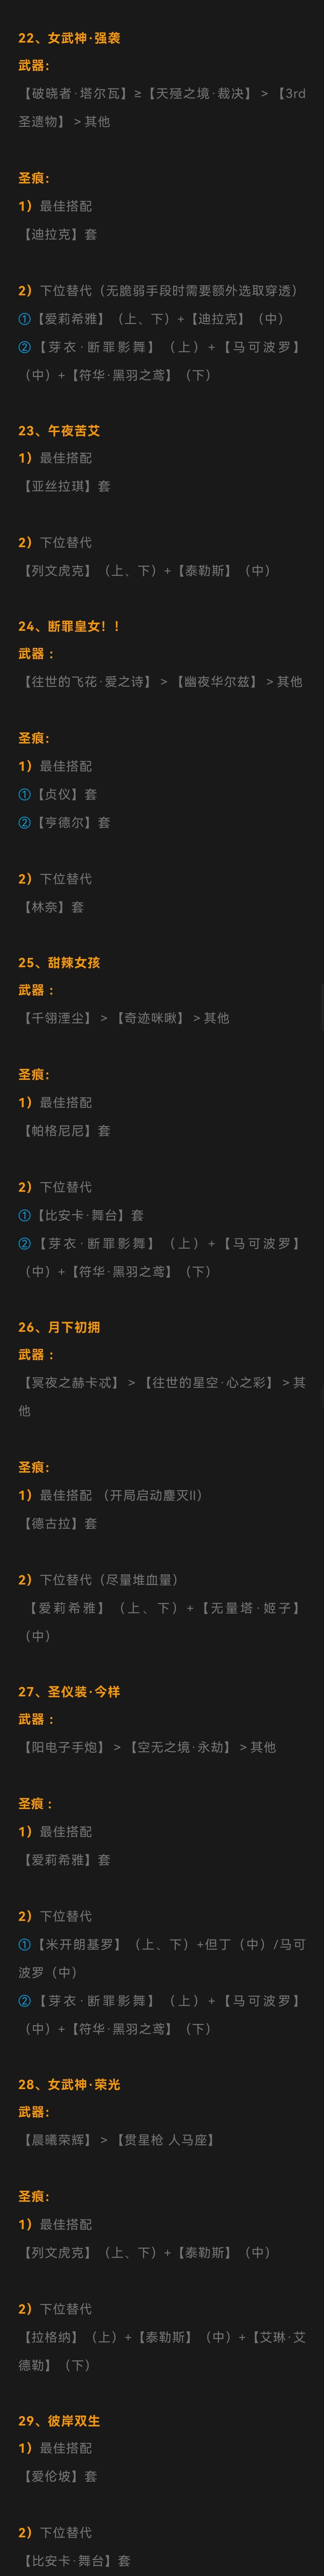 【崩坏3通讯中心】5.8乐土推荐表丨全角色装备搭配参考_2